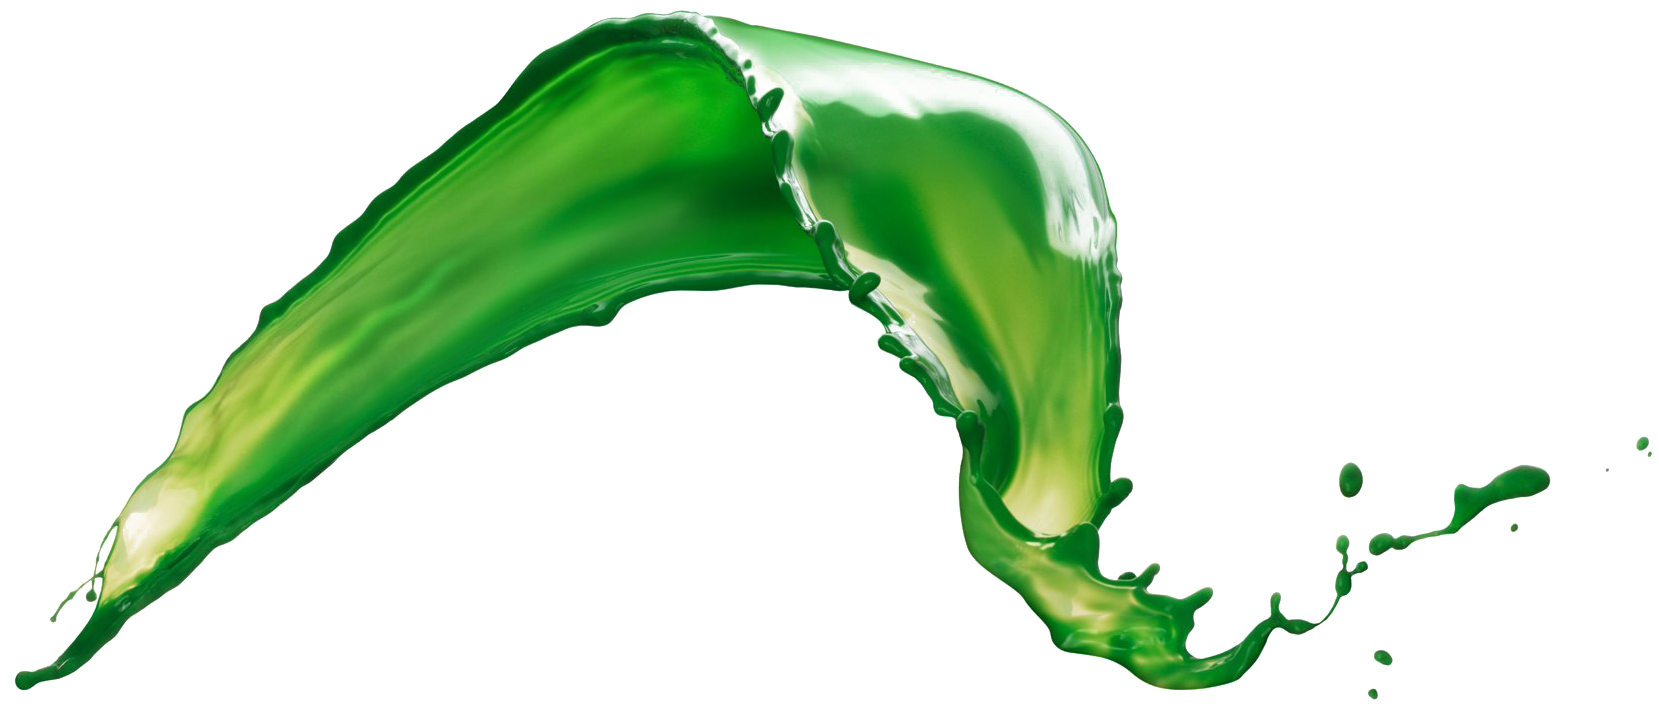 Liquid Png File - Green Liquid Splash Png Clipart (1860x1140), Png Download